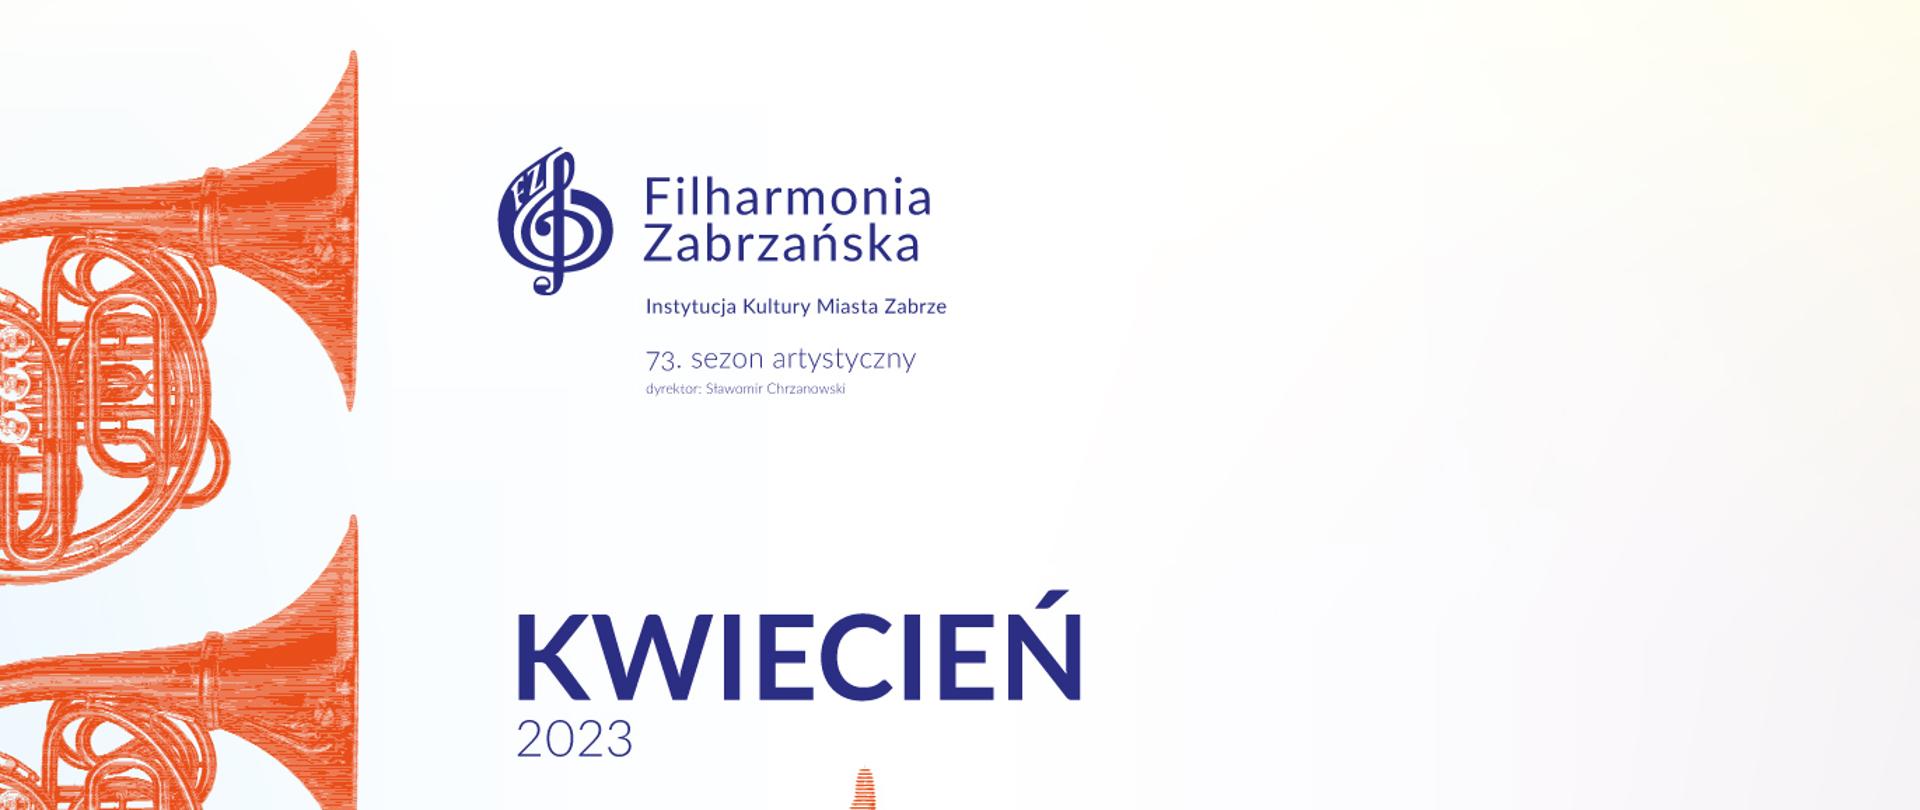 Na jasnym tle informacje o odbywających się koncertach w Filharmonii Zabrzańskiej w kwietniu, z lewej strony zdjęcia waltorni.